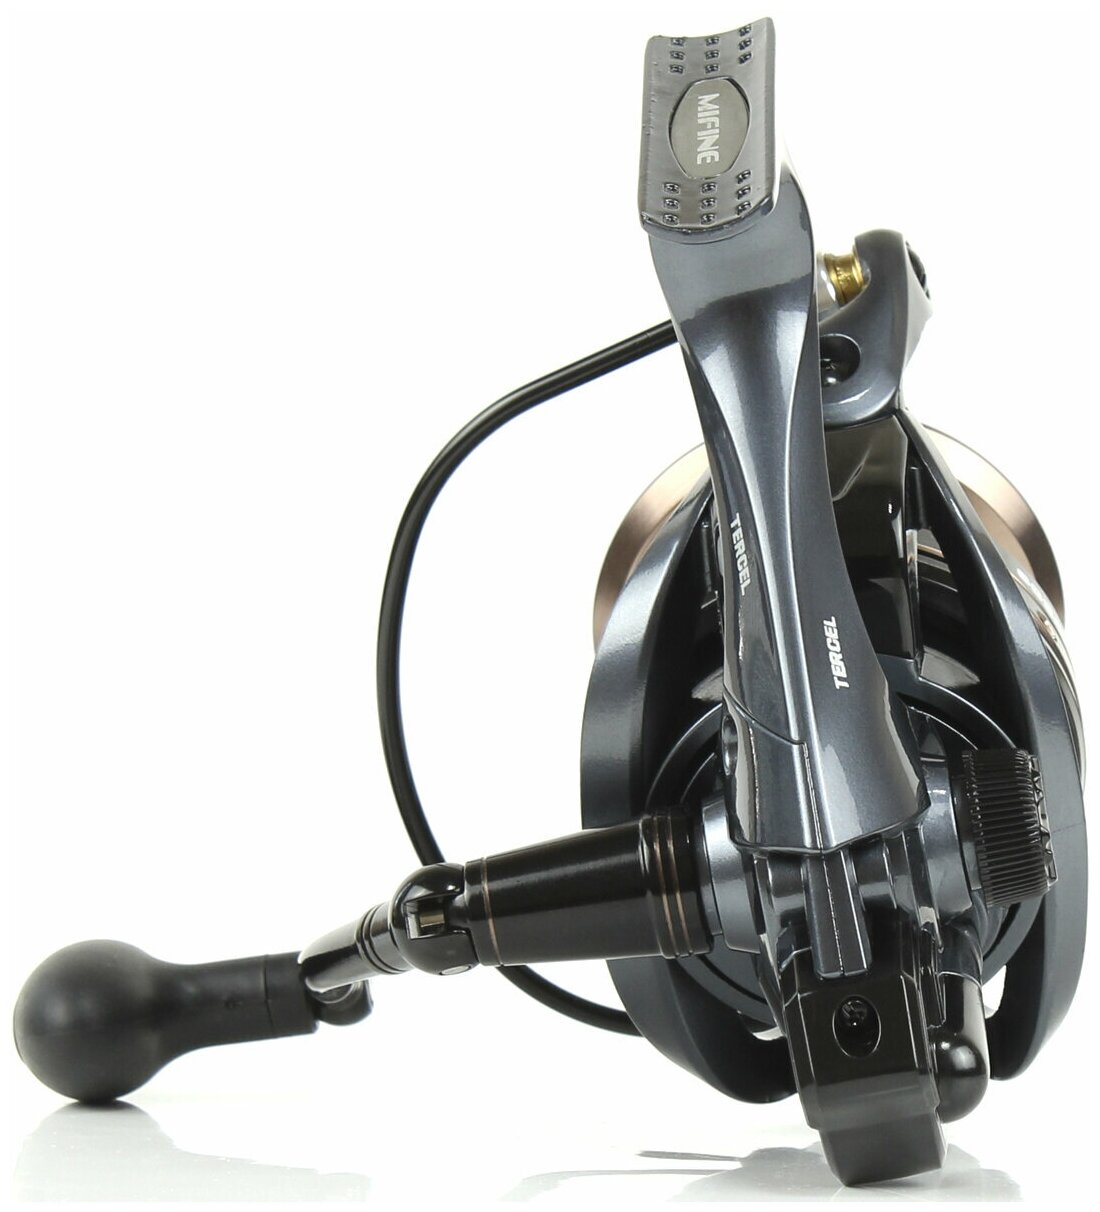 Катушка рыболовная MIFINE TERCEL 6000F 6+1 подшипник для рыбалки карповая для фидера для троллинга с металлической шпулей